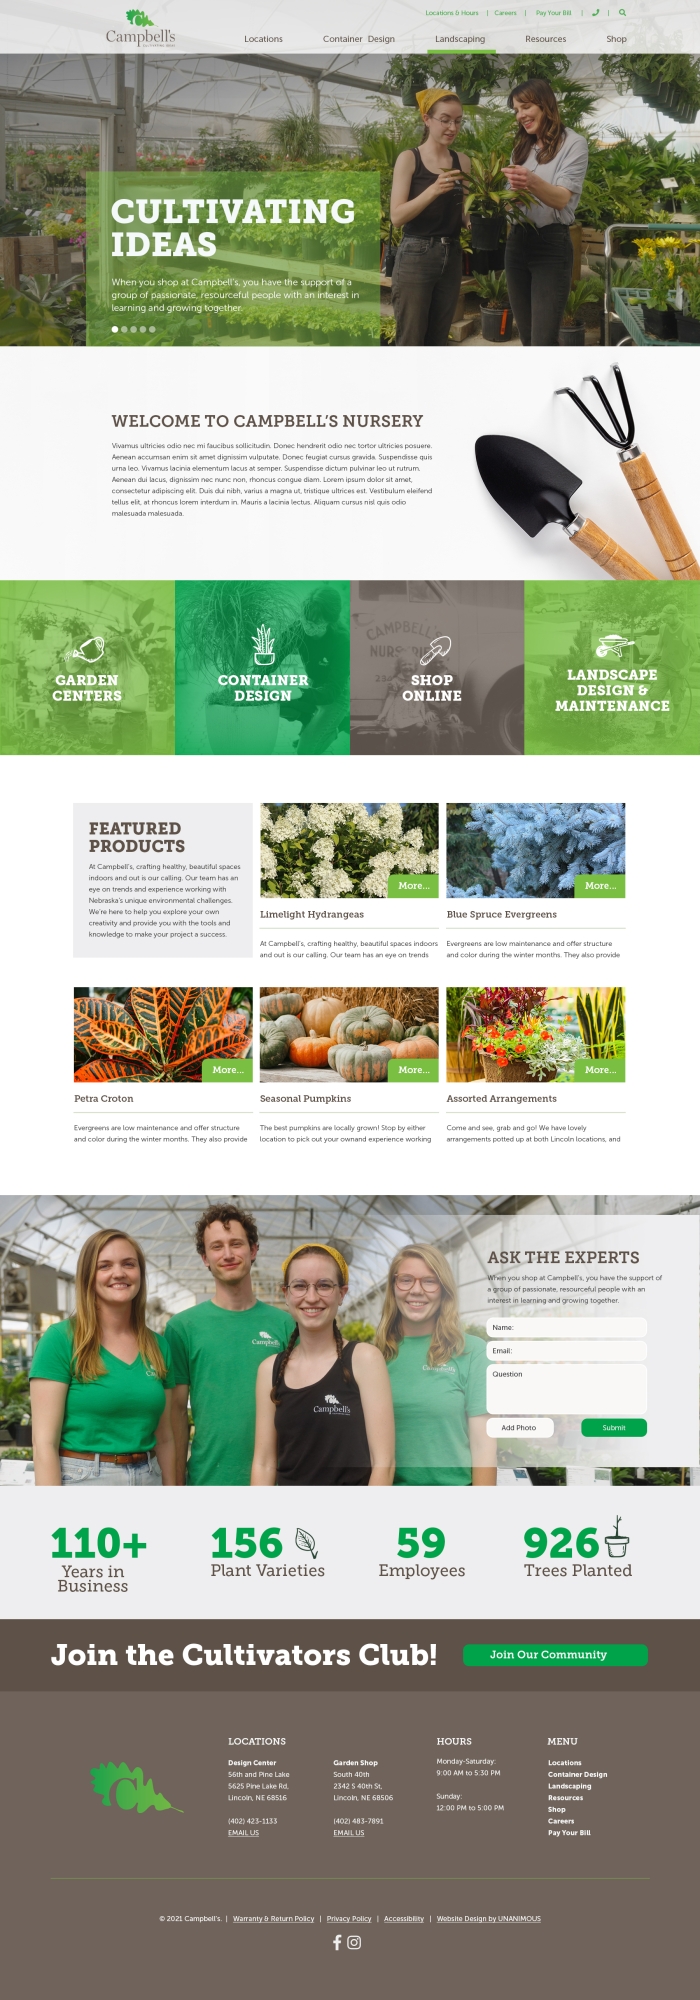 campbells landscaping website home